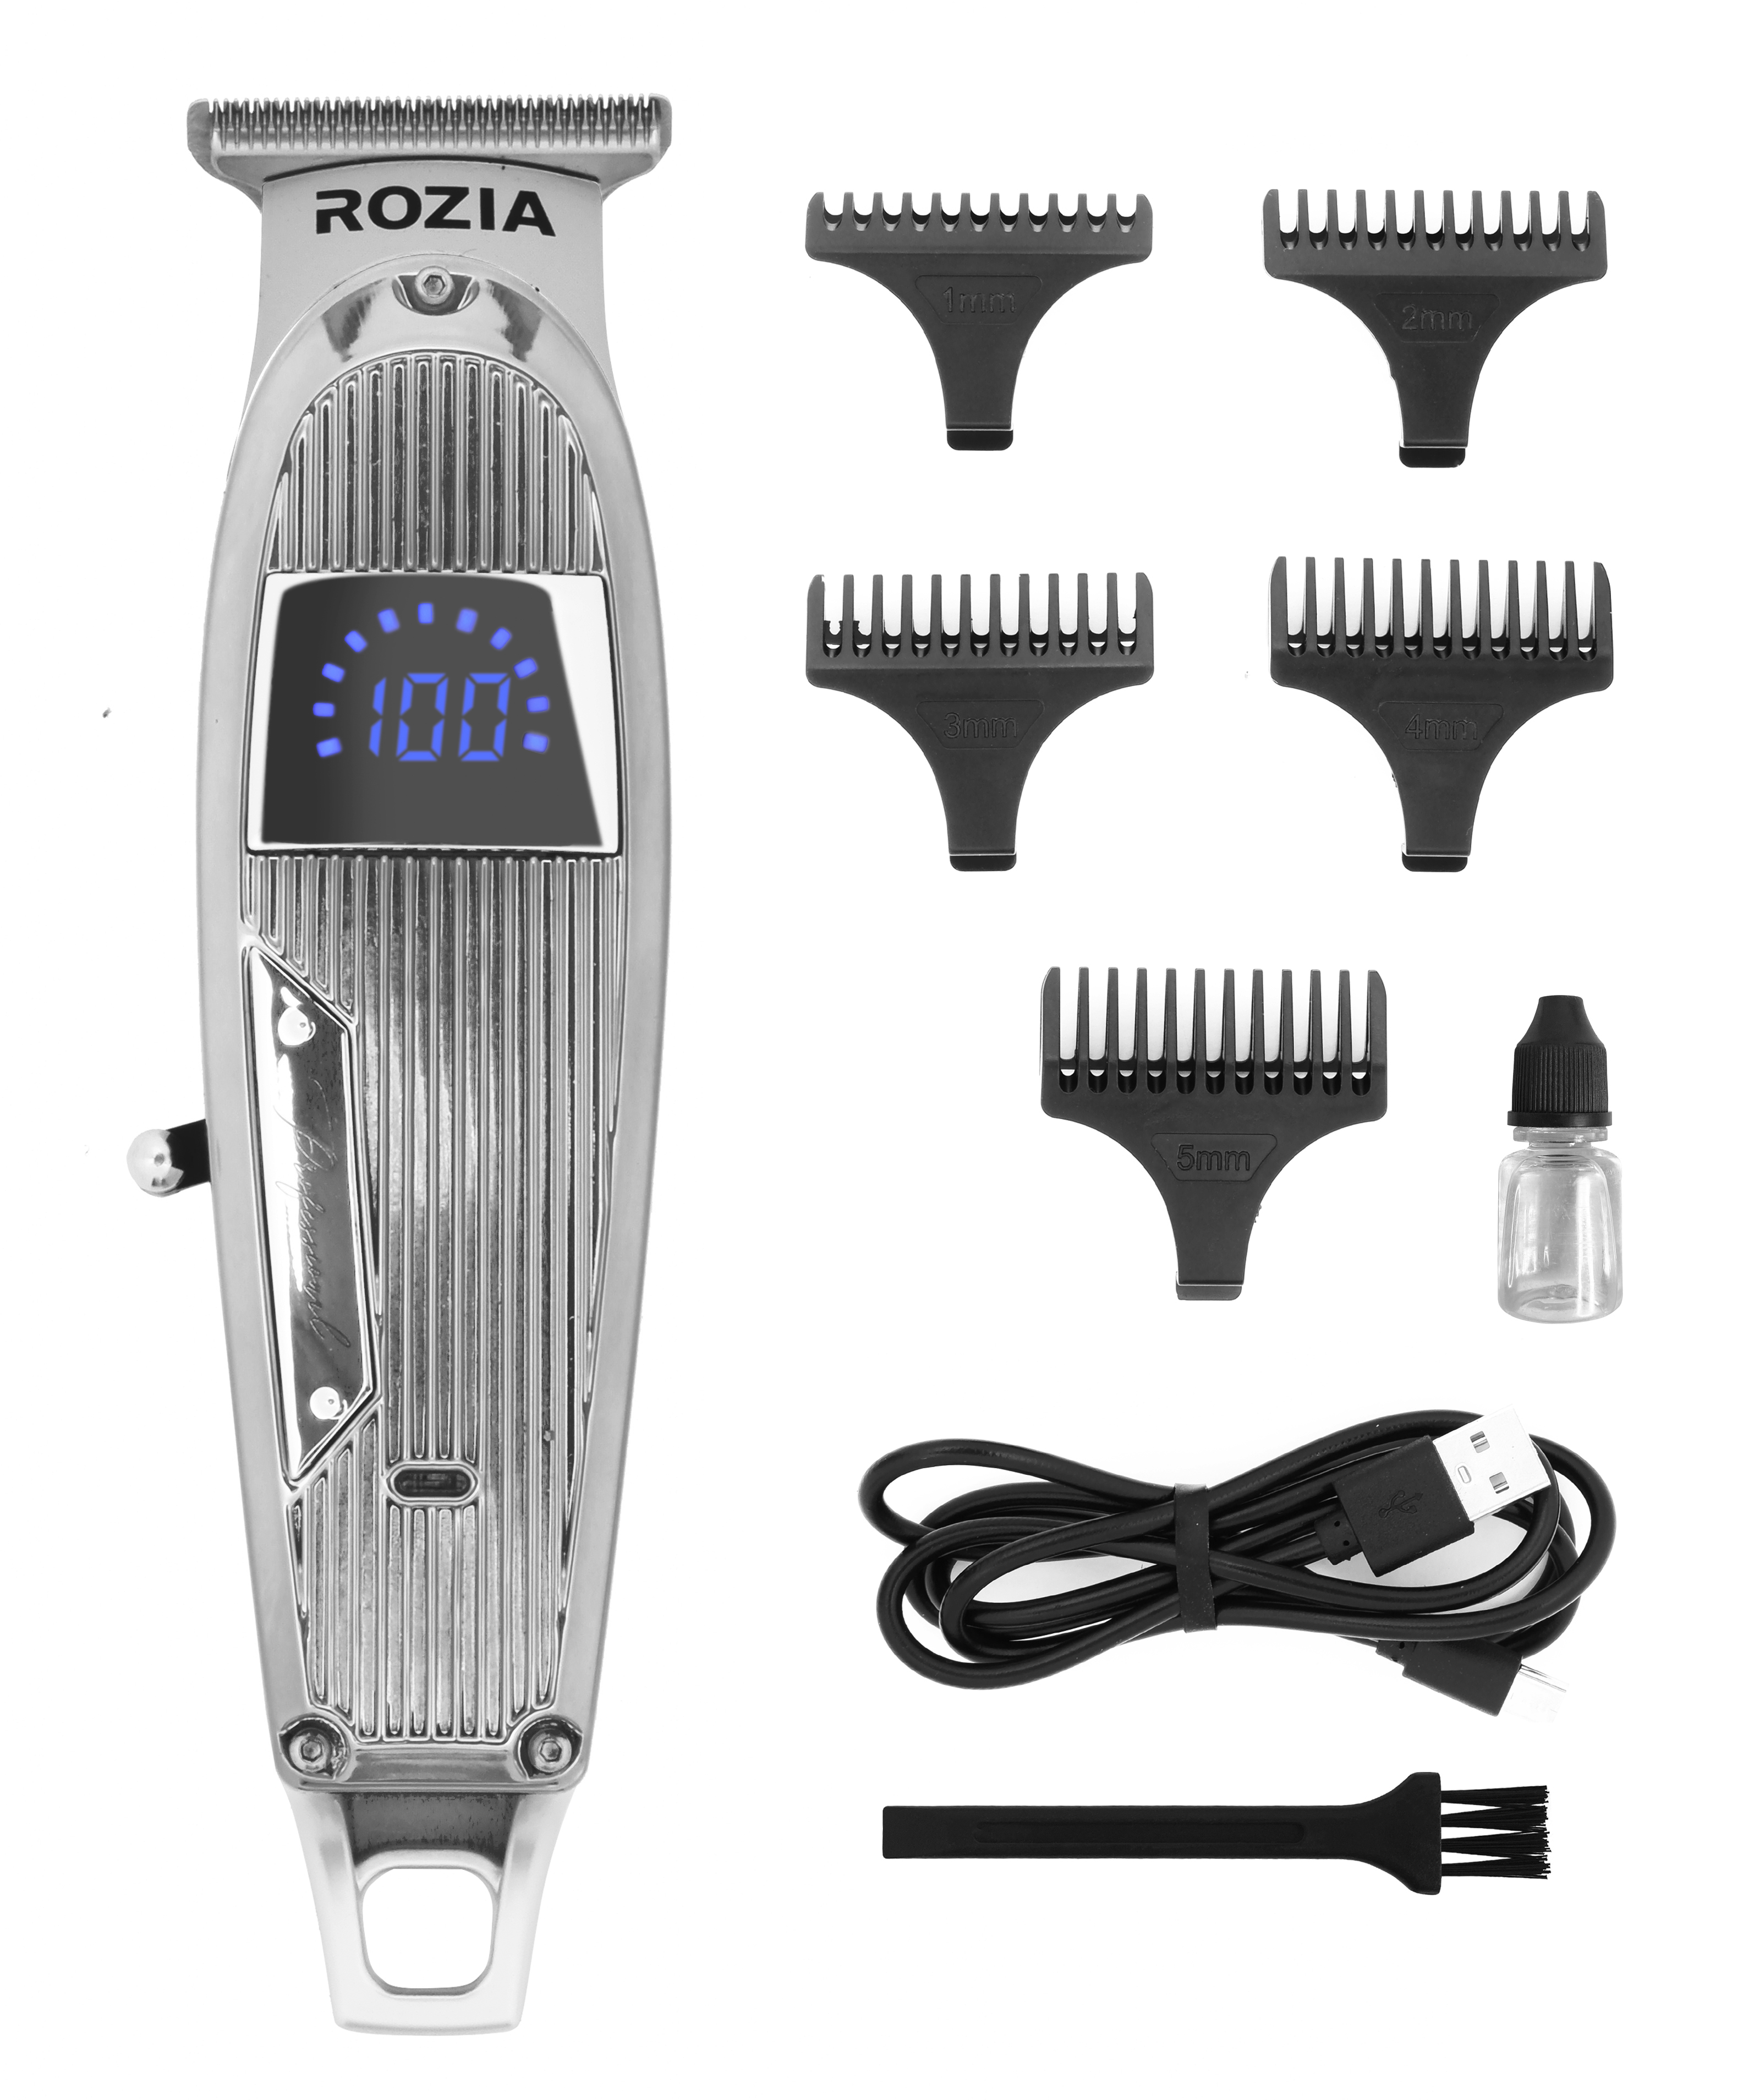 Машинка для стрижки волос Rozia HQ-321 серебристая машинка для стрижки волос rozia hq2207